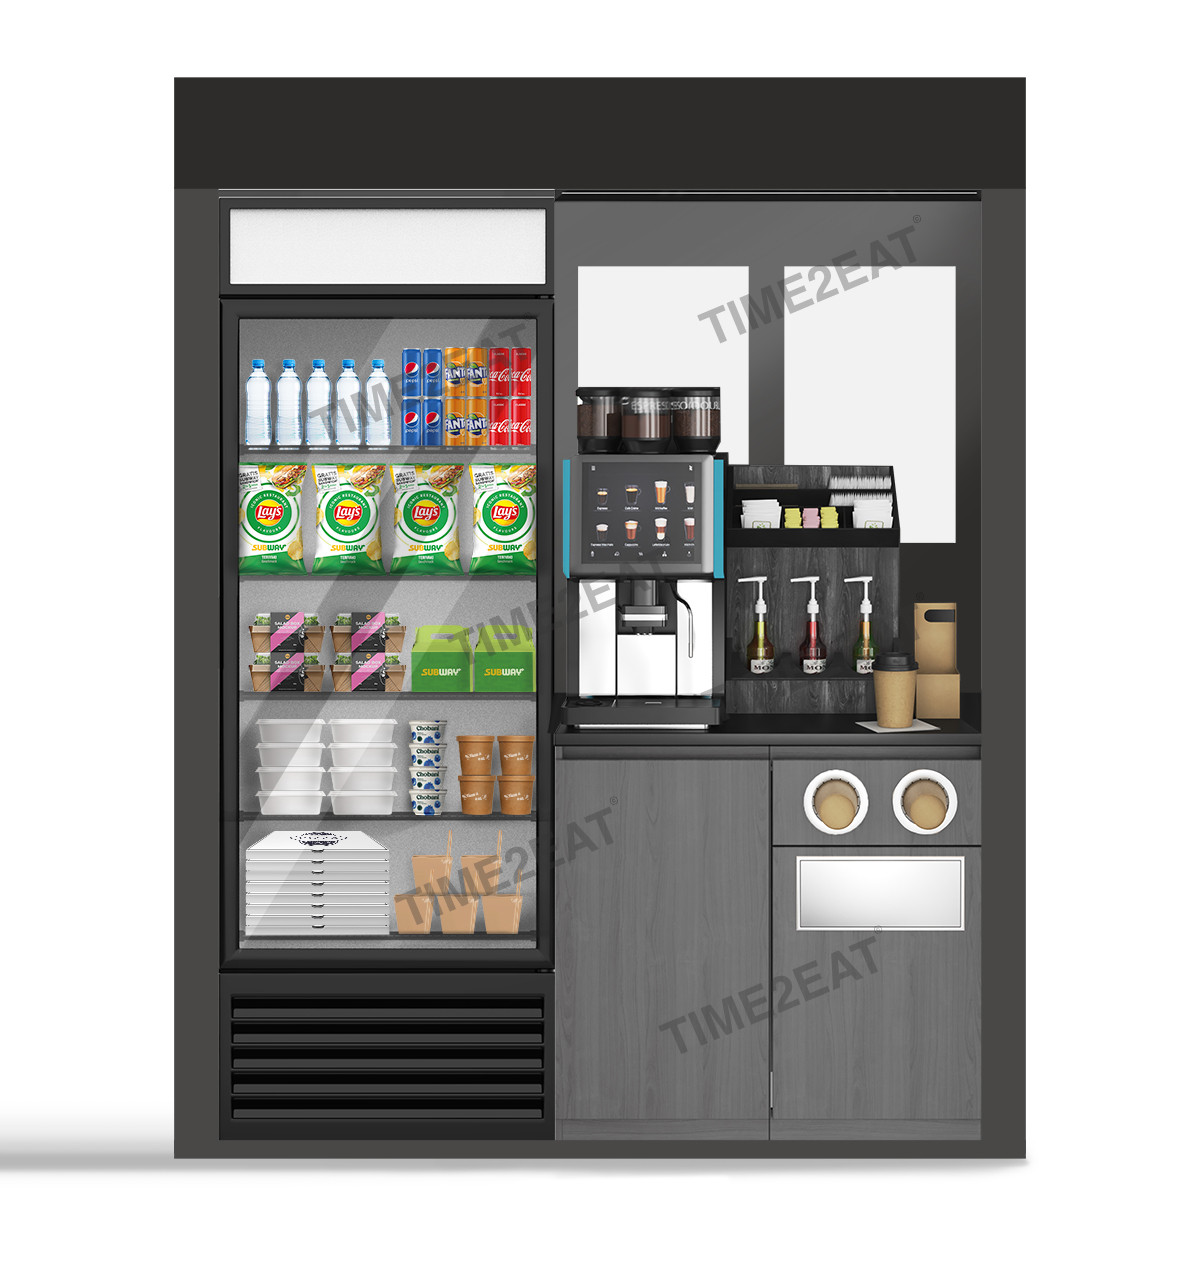 Установка вендинговых автоматов - микромаркет, умный холодильник для корпоративного питания